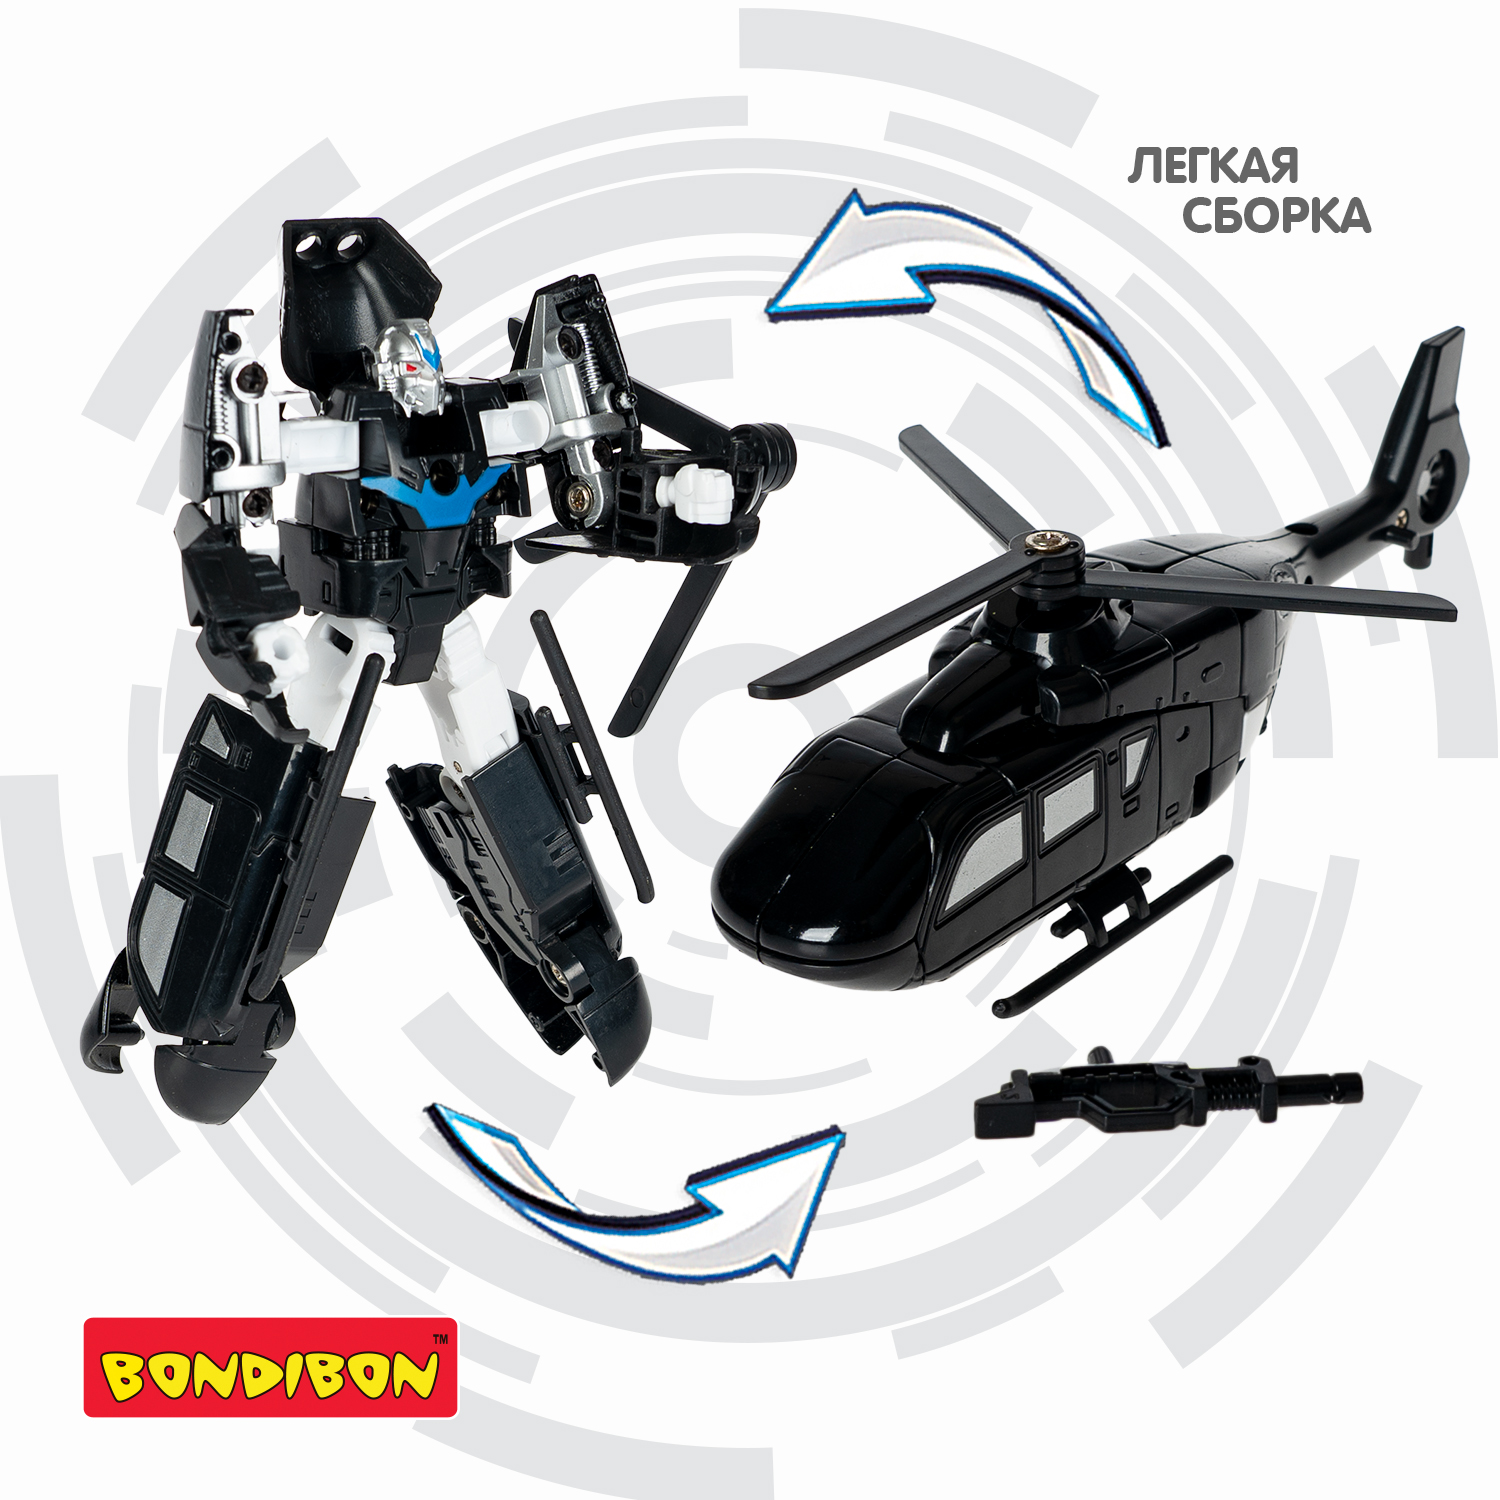 Трансформер BONDIBON 2 в 1 робот - вертолет чёрного цвета - фото 6